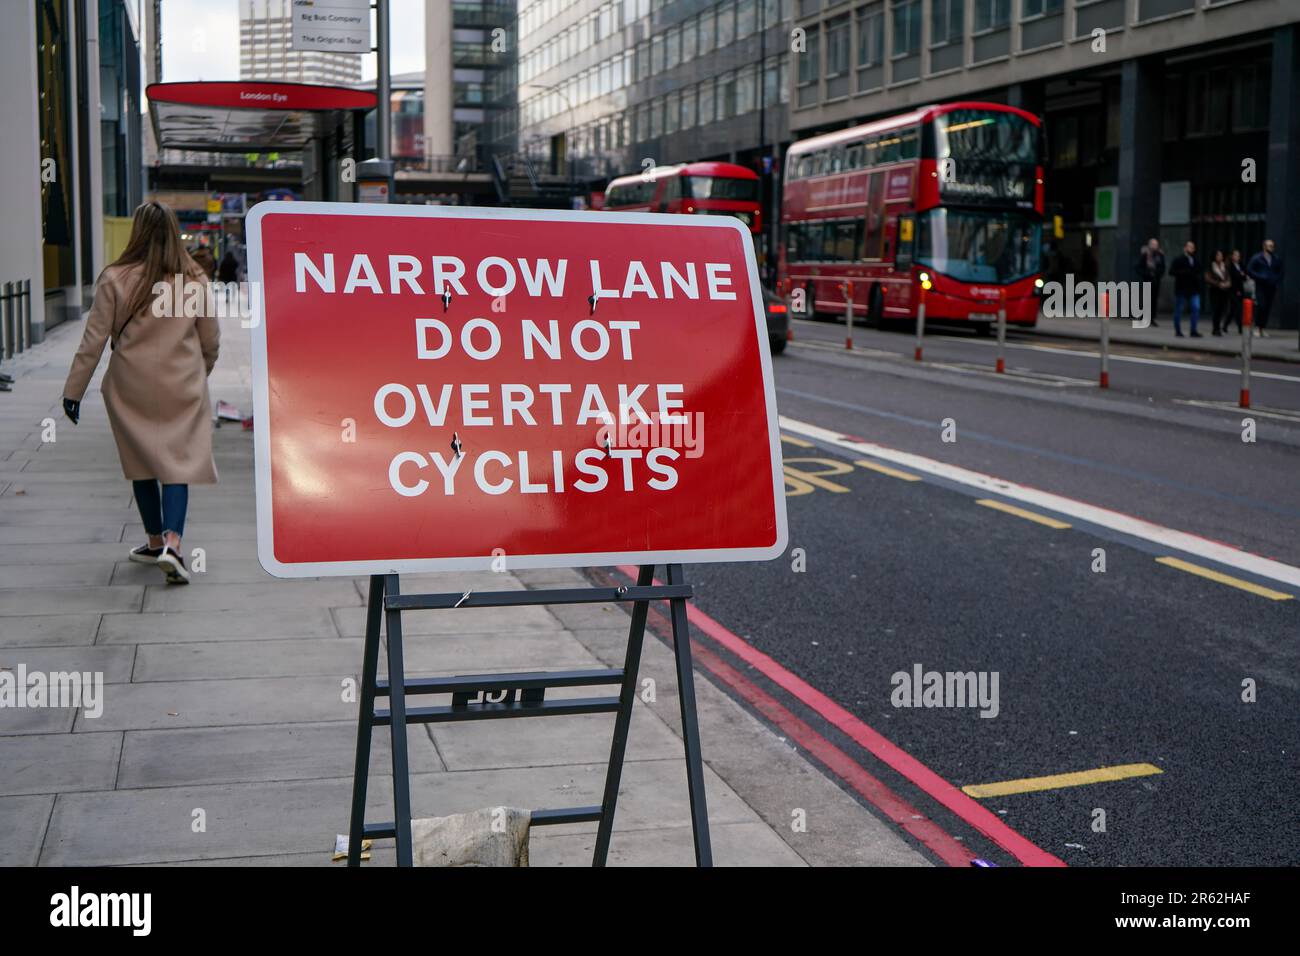 London, Vereinigtes Königreich - 02. Februar 2019: Rotes Straßenschild, das darauf hinweist, Radfahrer nicht zu überholen, da die Straße in einem belebten Stadtzentrum und einem hohen Gebäude eng ist Stockfoto